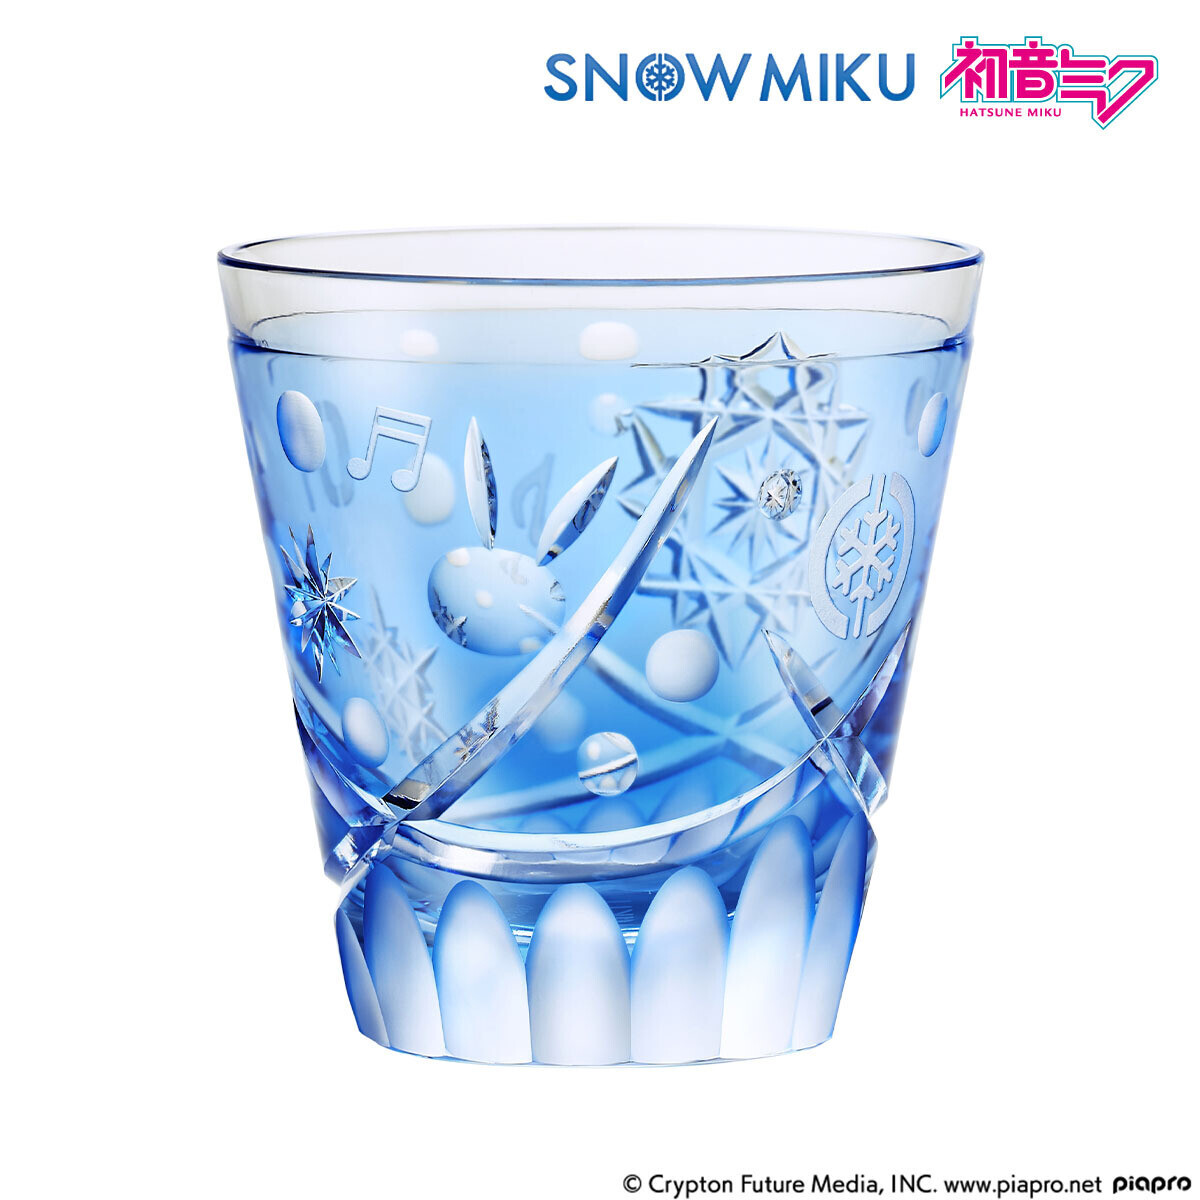 『初音ミク』と伝統工芸・江戸切子のコラボ第3弾！『雪ミク』をイメージした江戸切子グラスが登場描き下ろしイラストを使用したアクリル展示台付き